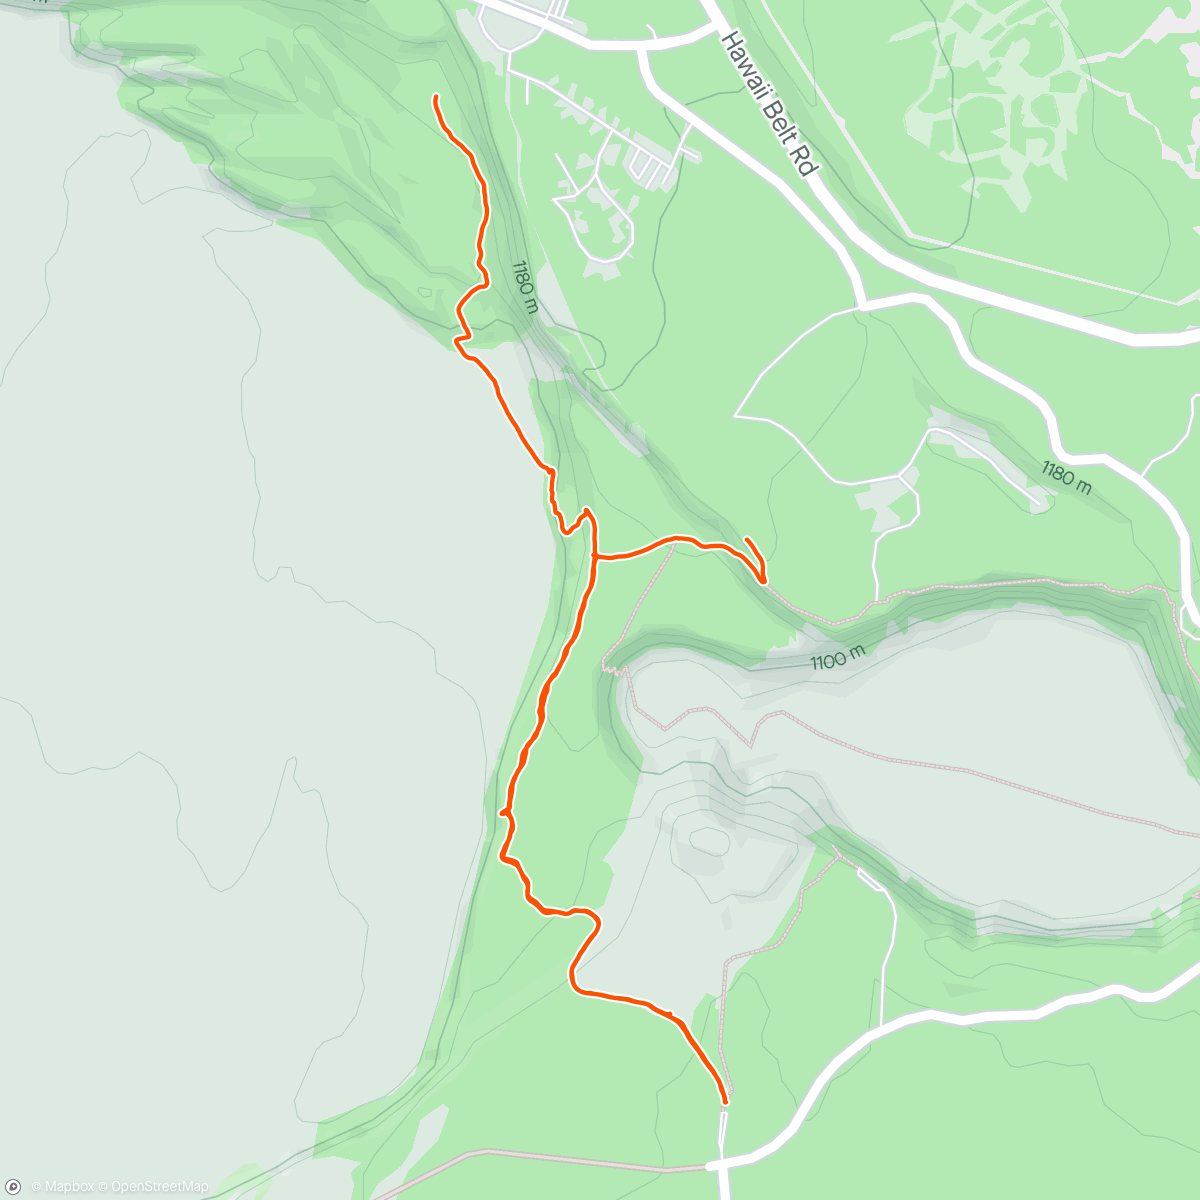 「Crater Rim hike」活動的地圖